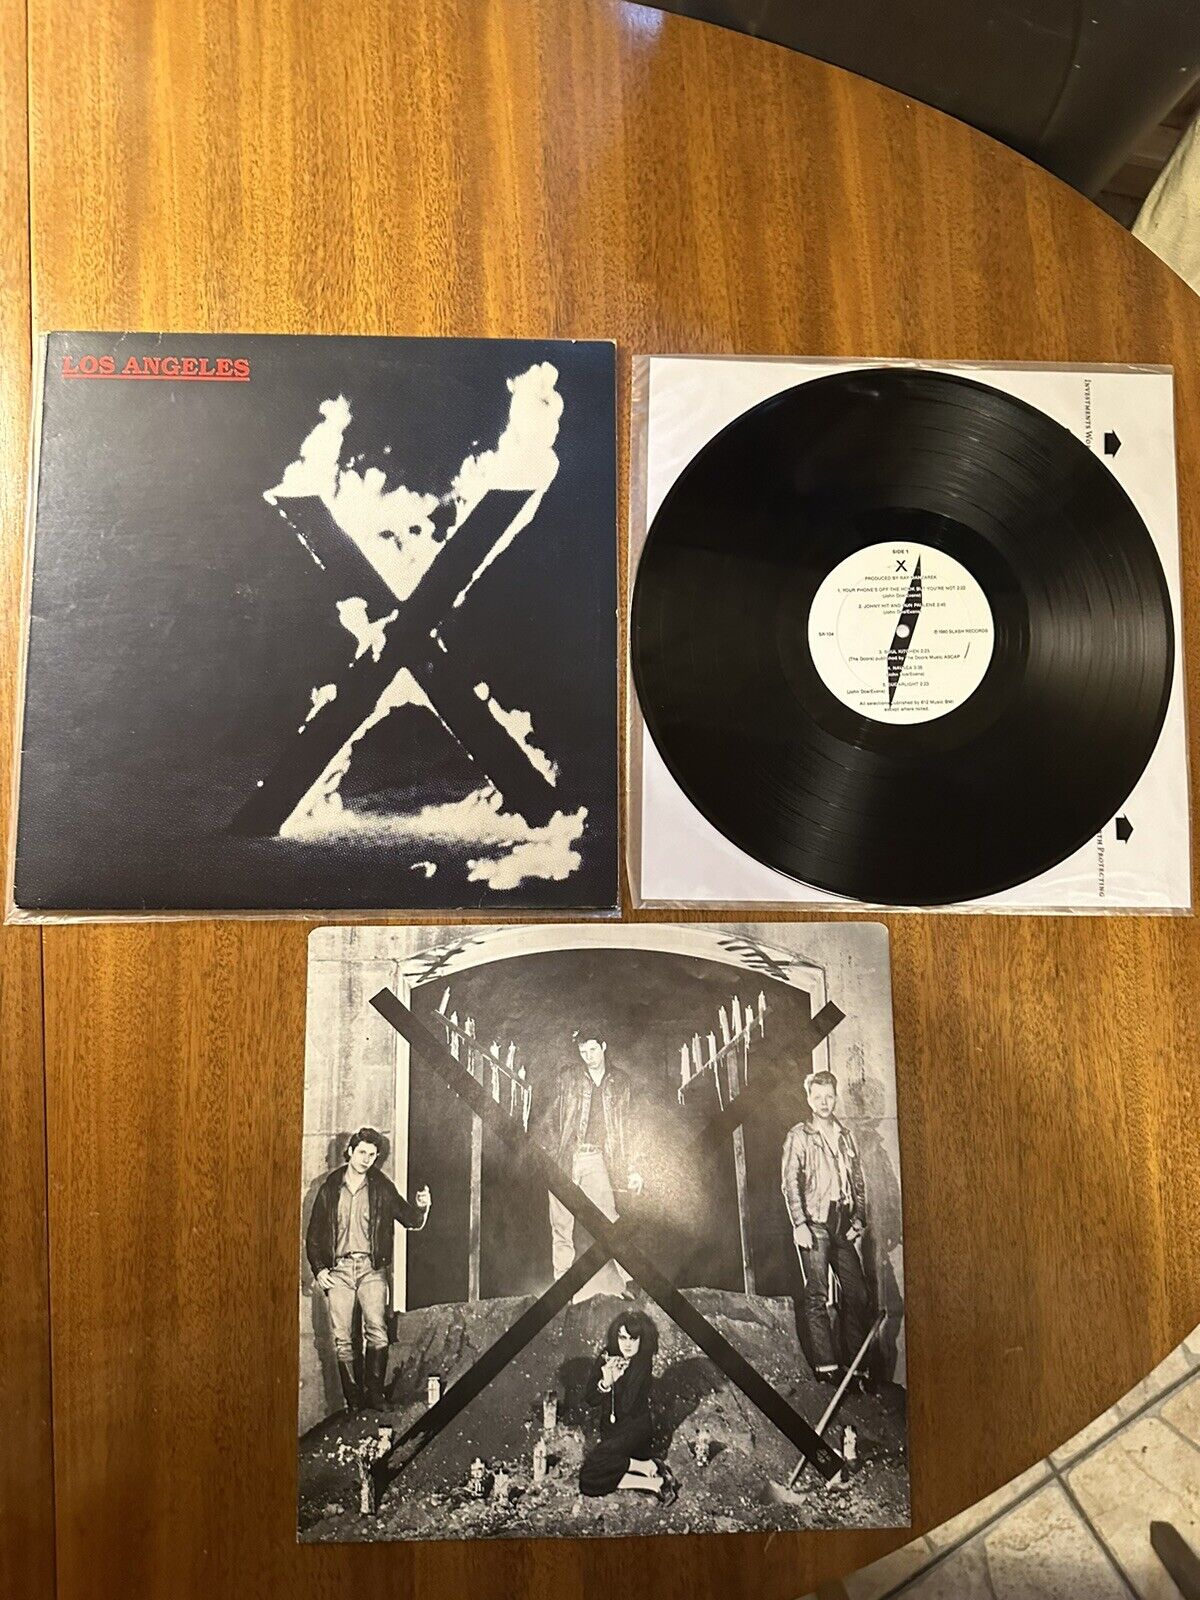 X - Los Angeles - Vinyl LP 1980 Warner Bros Slash VG+/VG+ Vinyl First Press